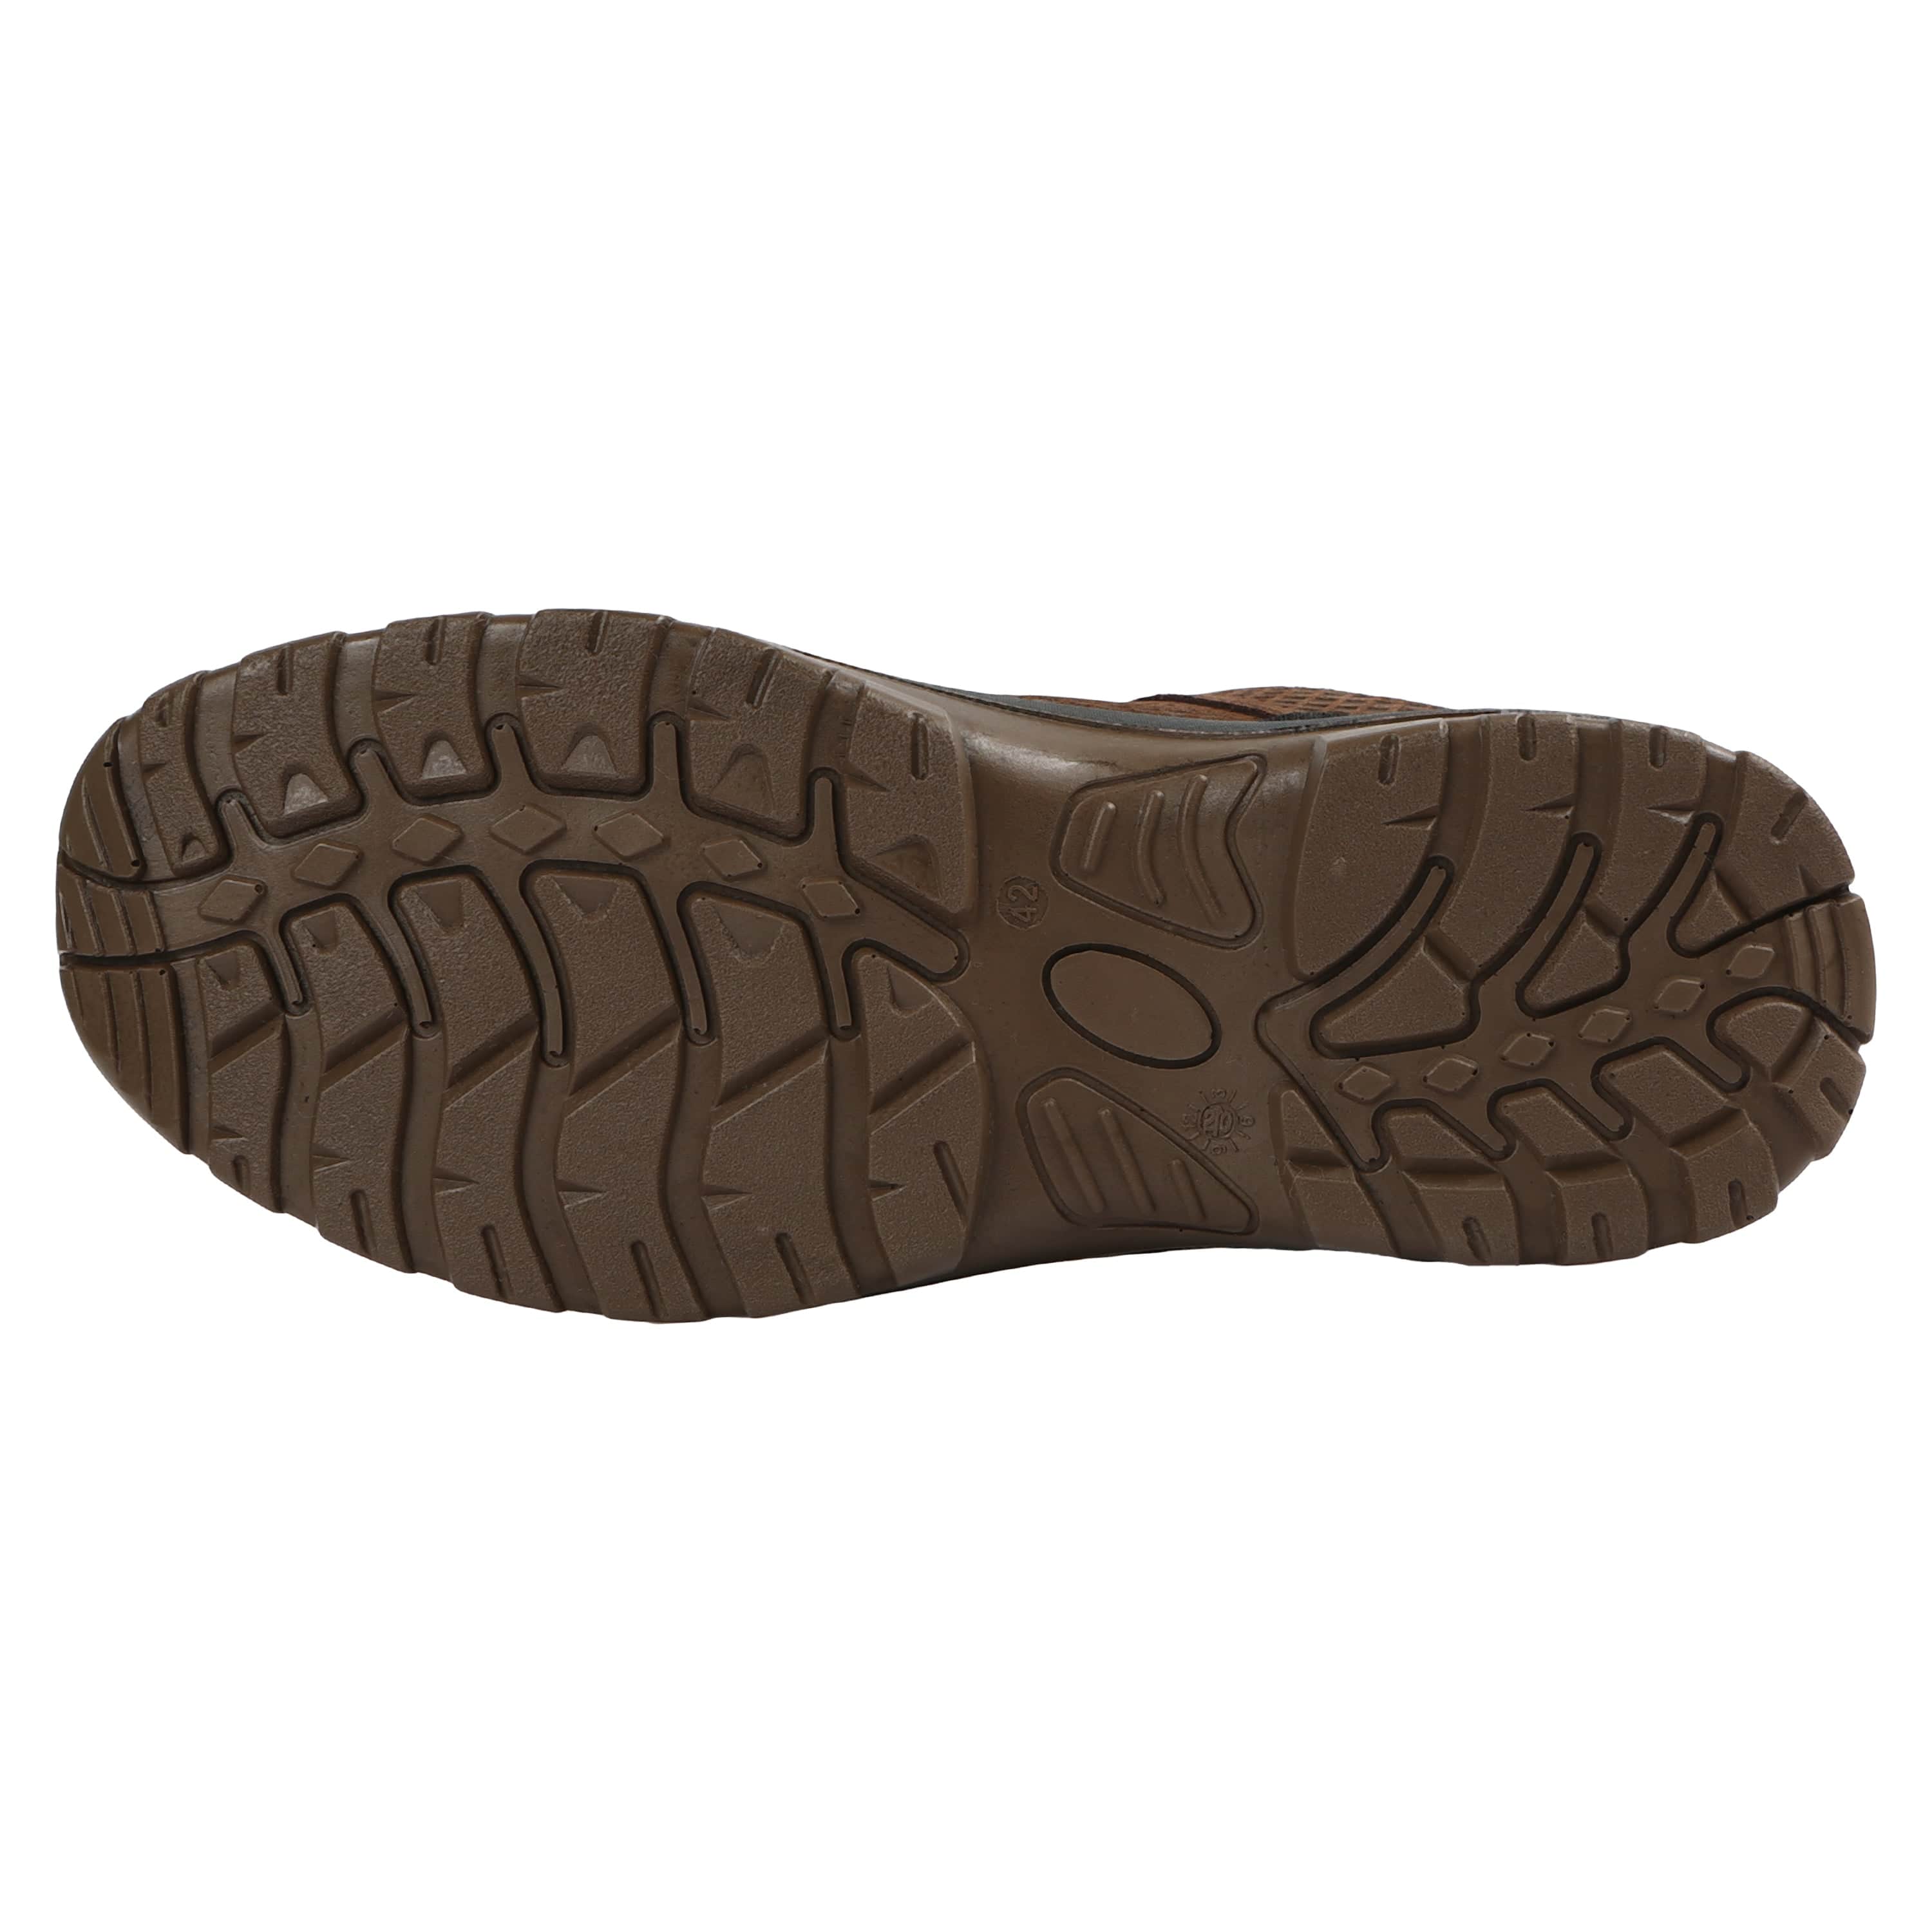 Men's Rockford Waterproof Leather Hiking Shoe